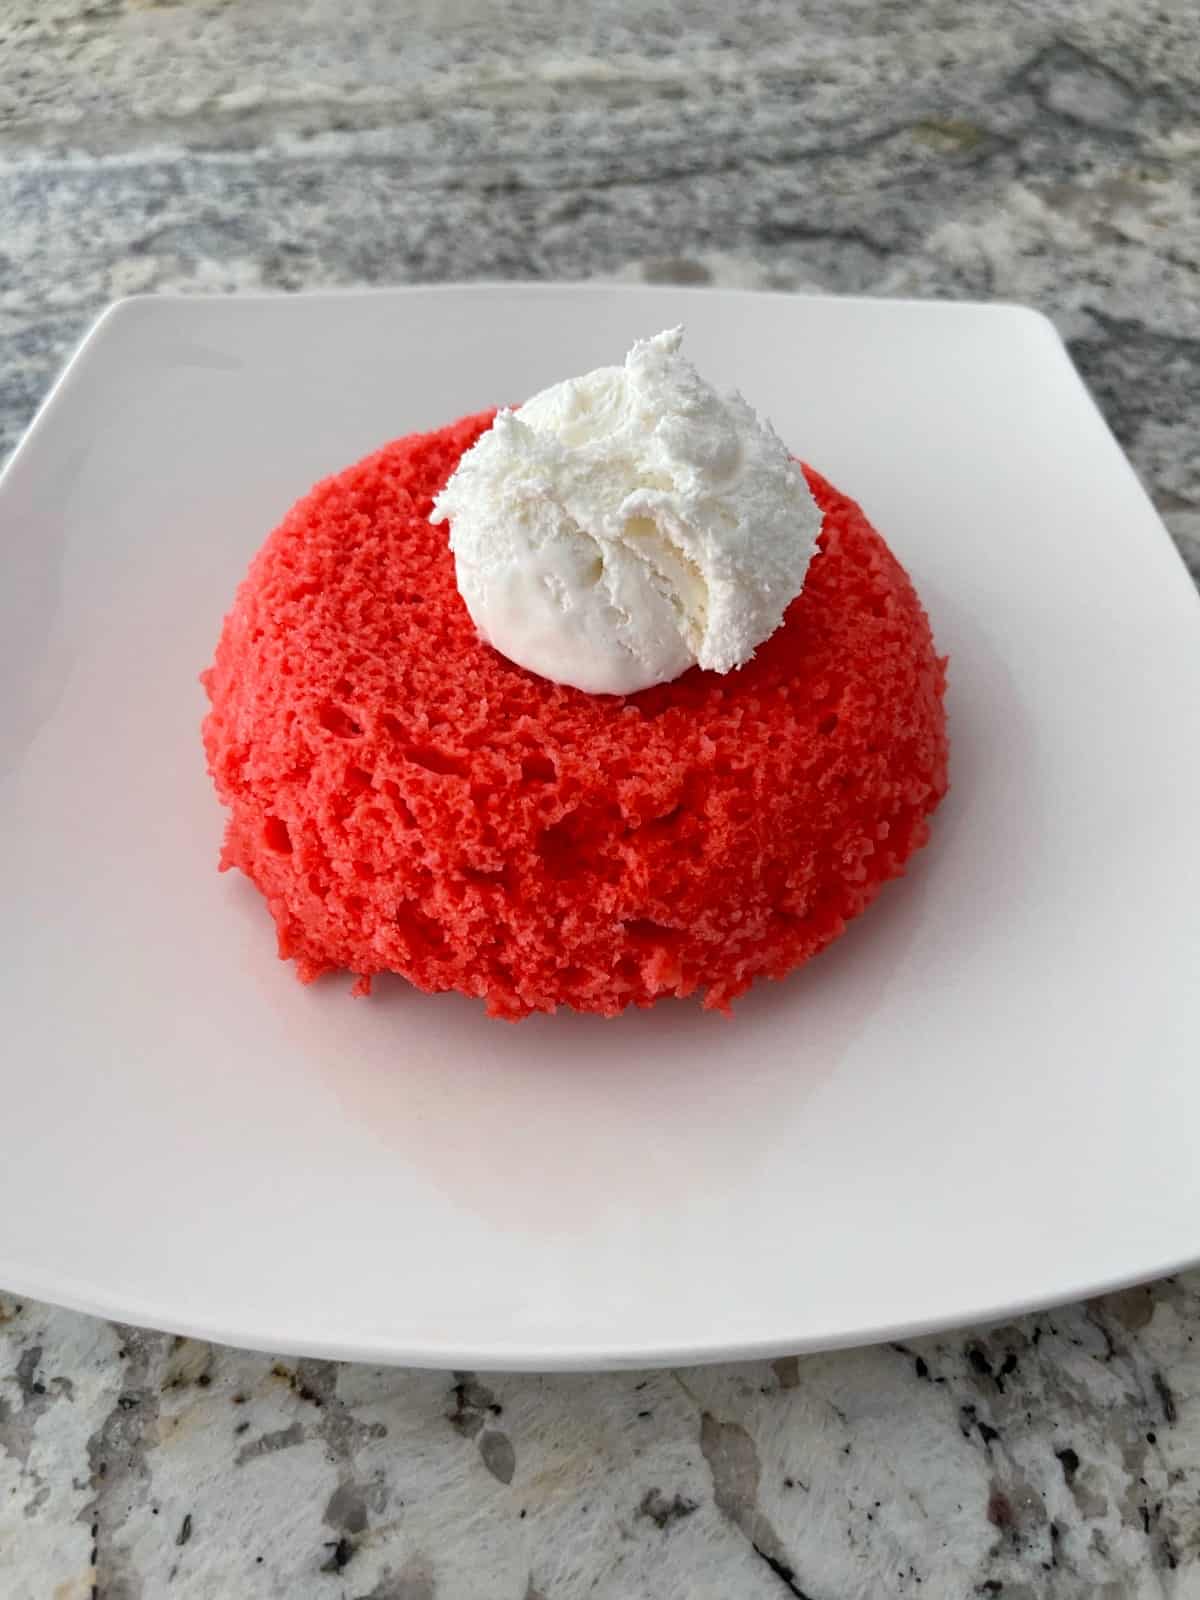 Κέικ μικροκυμάτων Raspberry Jell-o με ελαφριά χτυπημένη επικάλυψη σε μικρό λευκό πιάτο.